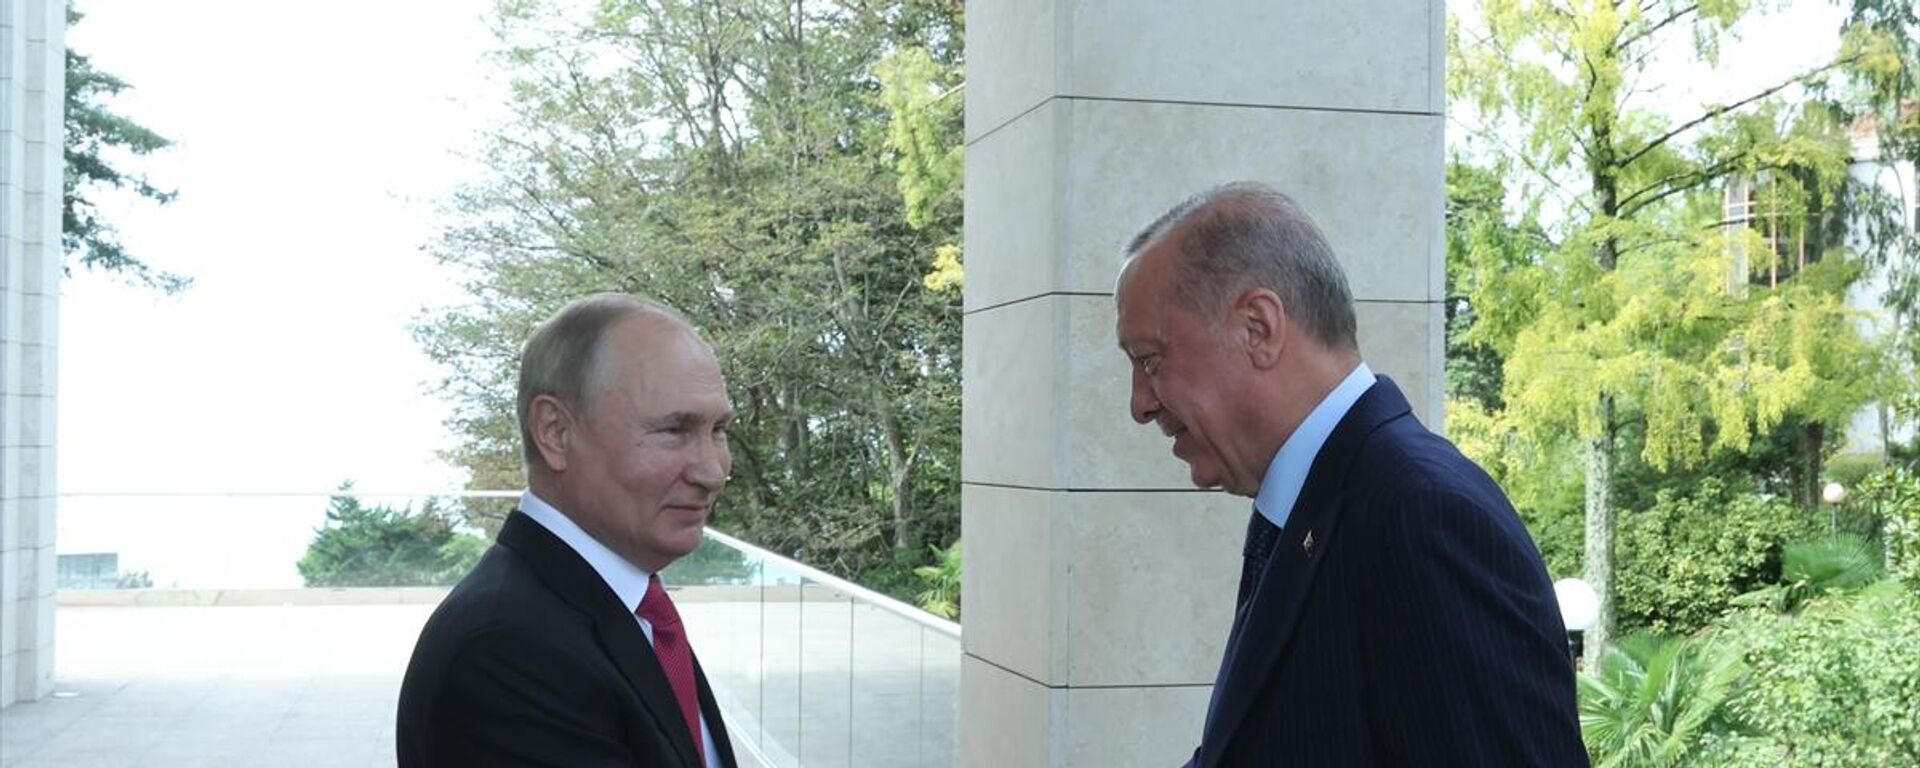 Türkiye Cumhurbaşkanı Recep Tayyip Erdoğan ve Rusya Devlet Başkanı Vladimir Putin, Rusya'nın Soçi kentinde bir araya geldi. - Sputnik Türkiye, 1920, 08.08.2022